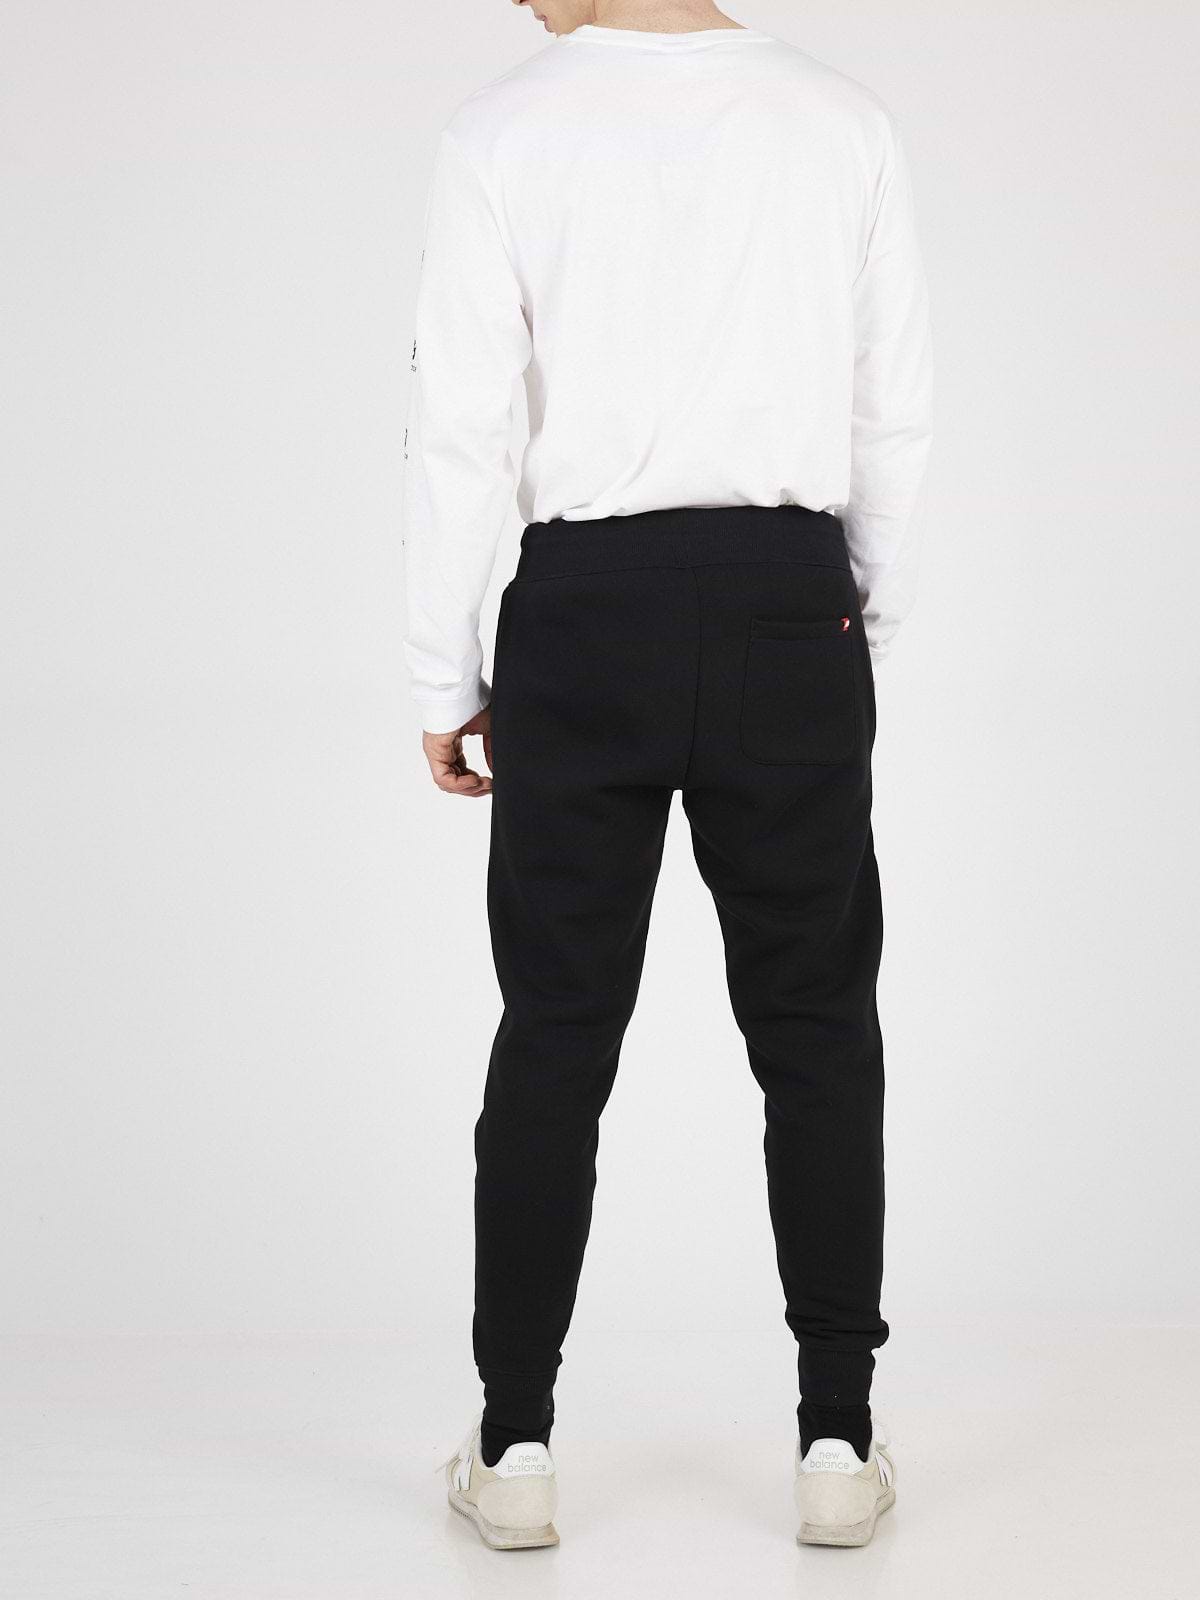 מכנסי טרנינג עם הדפס לוגו מטאלי- New Balance|ניו בלאנס